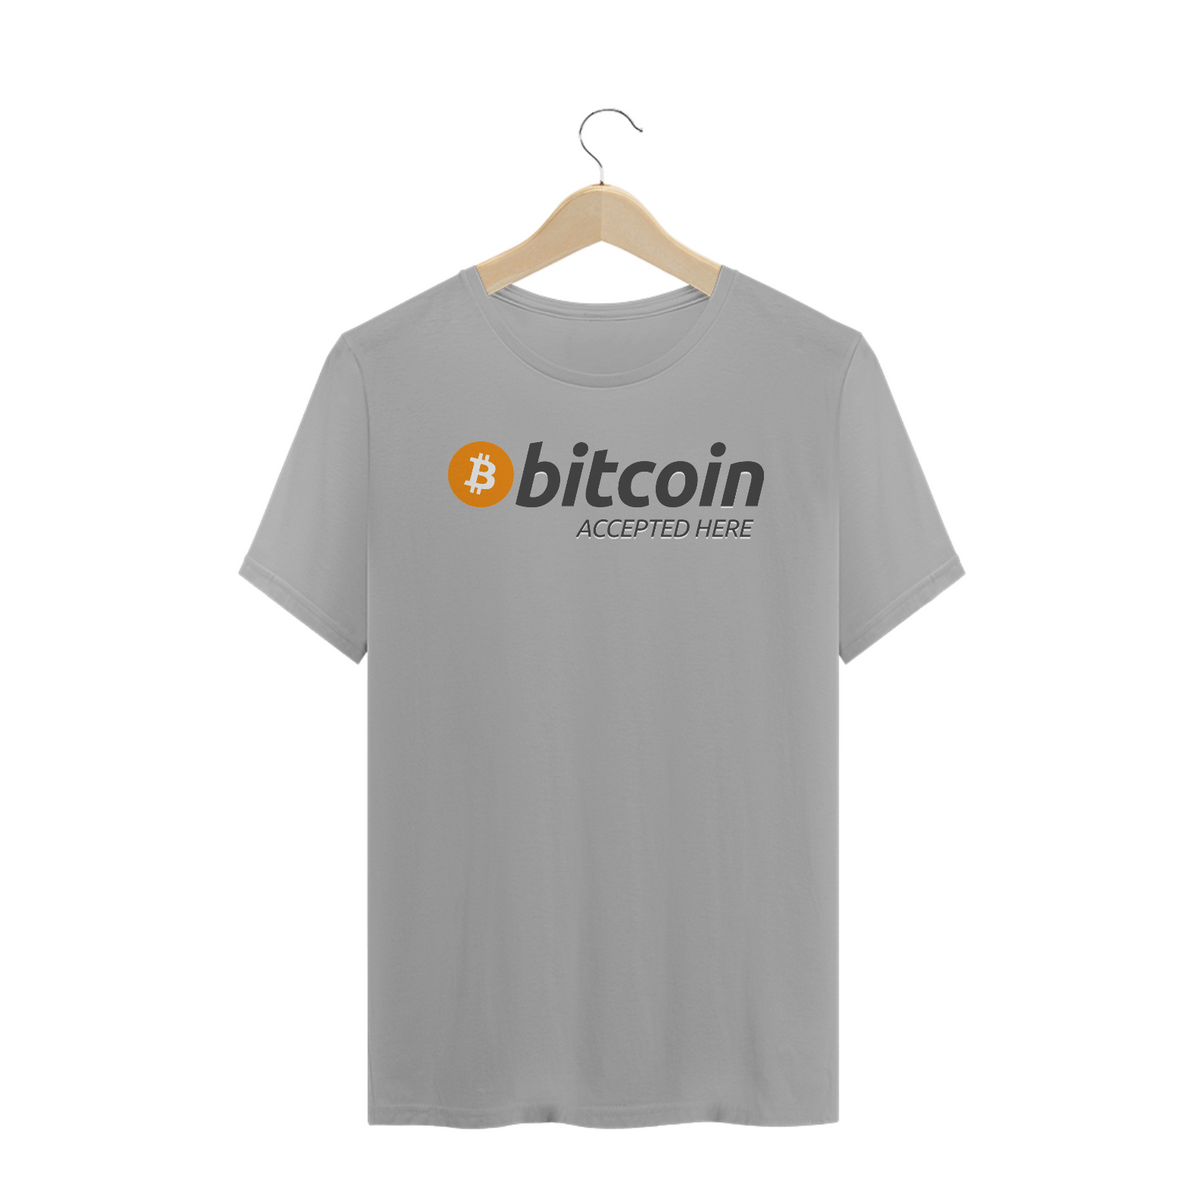 Nome do produto: Criptos - Camisa Bitcoin Accepted Here